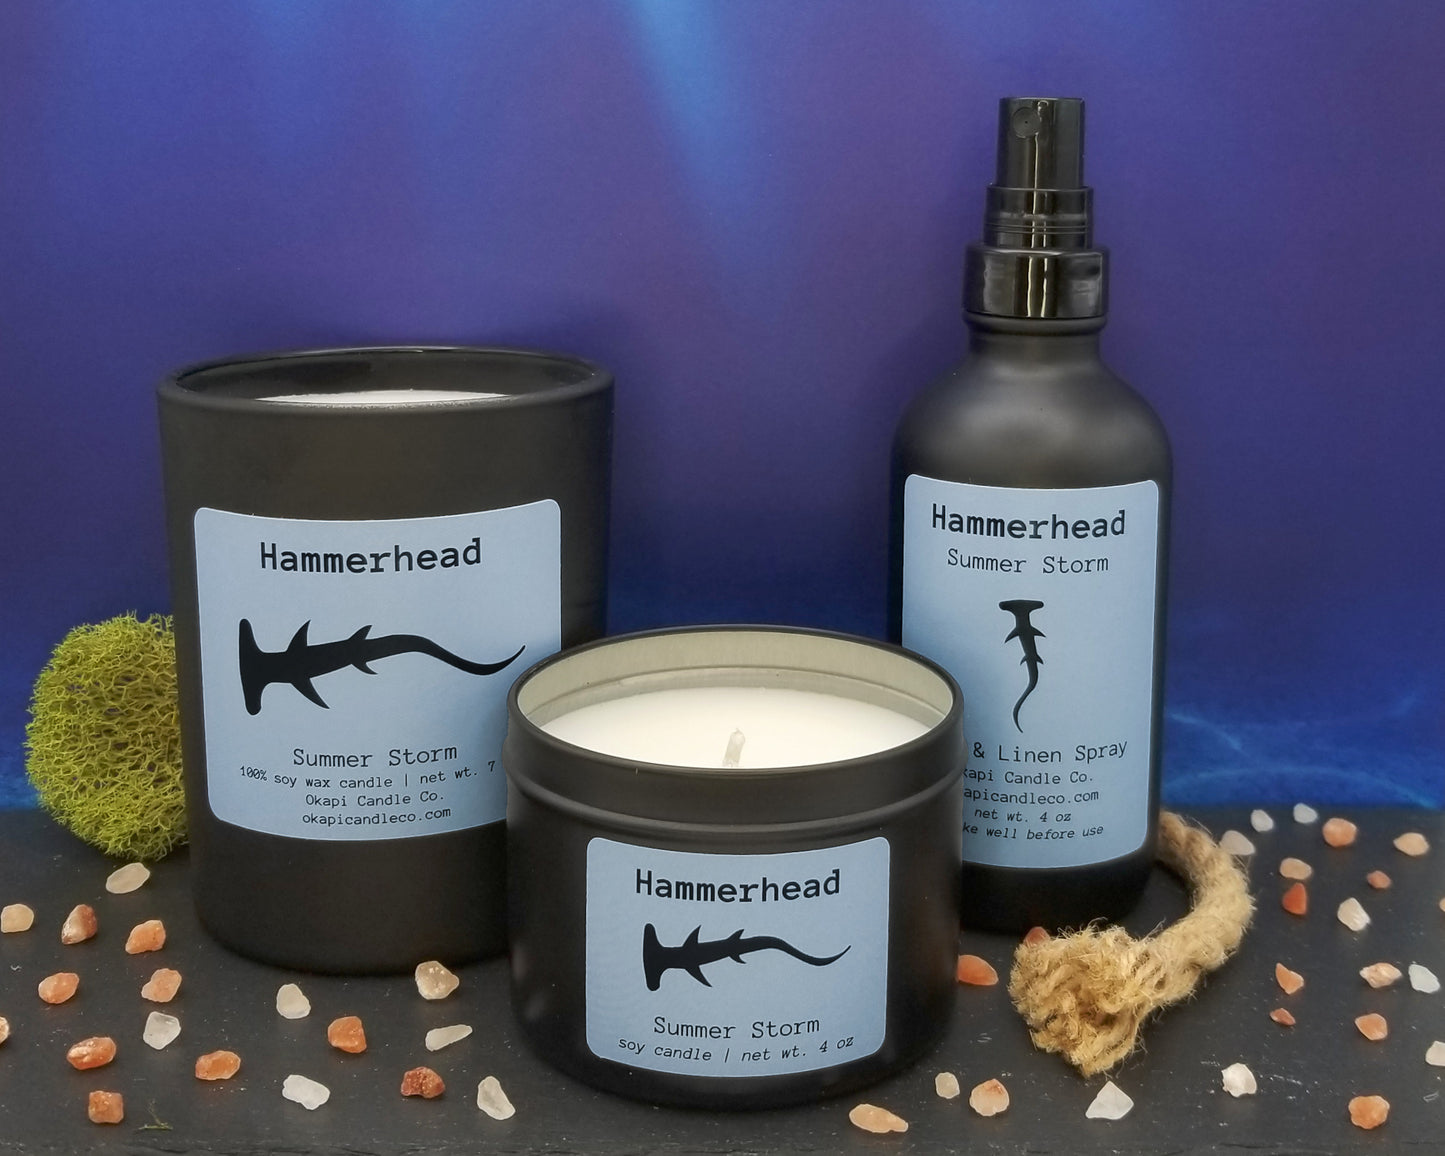 Hammerhead Shark Room & Linen Spray - Summer Storm Fragrance